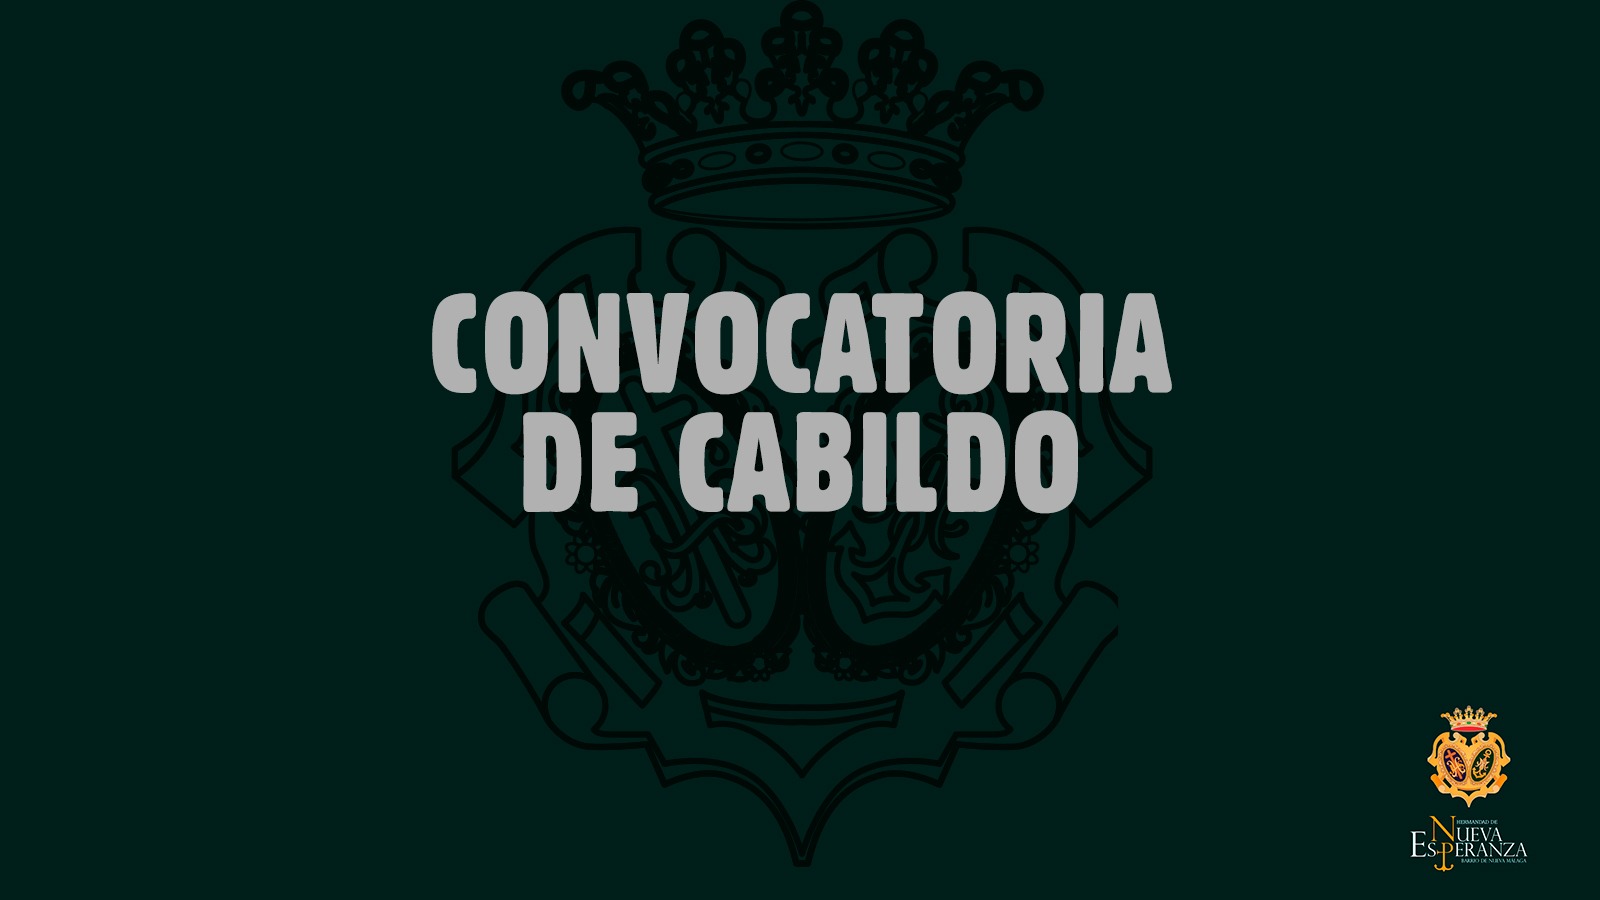 Convocatoria de Cabildo Extraordinario, Cuentas y Salida 1 de febrero 2022